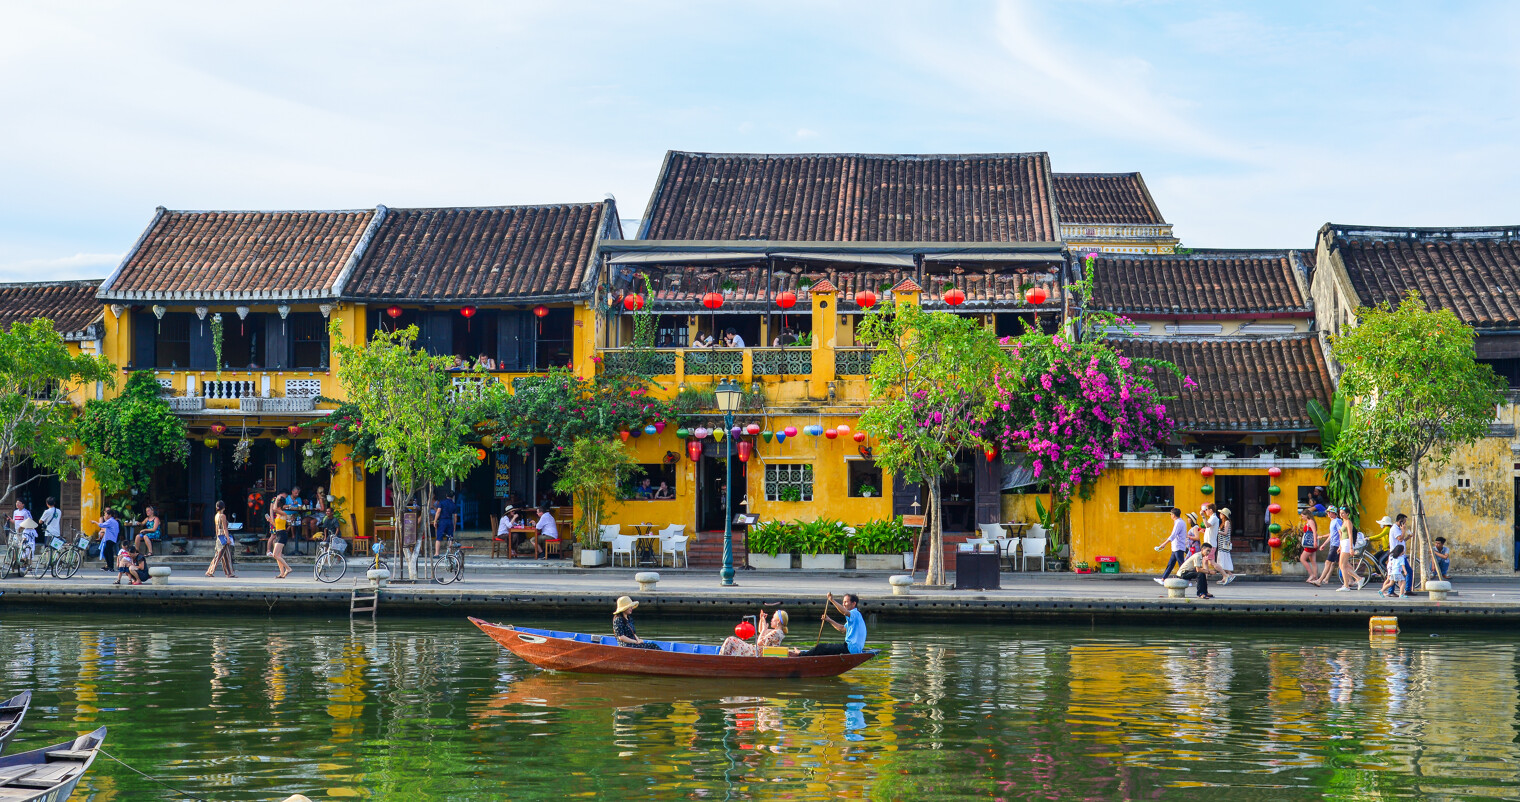 Vue sur la ville de Hoi An au Vietnam avec ses façades jaune